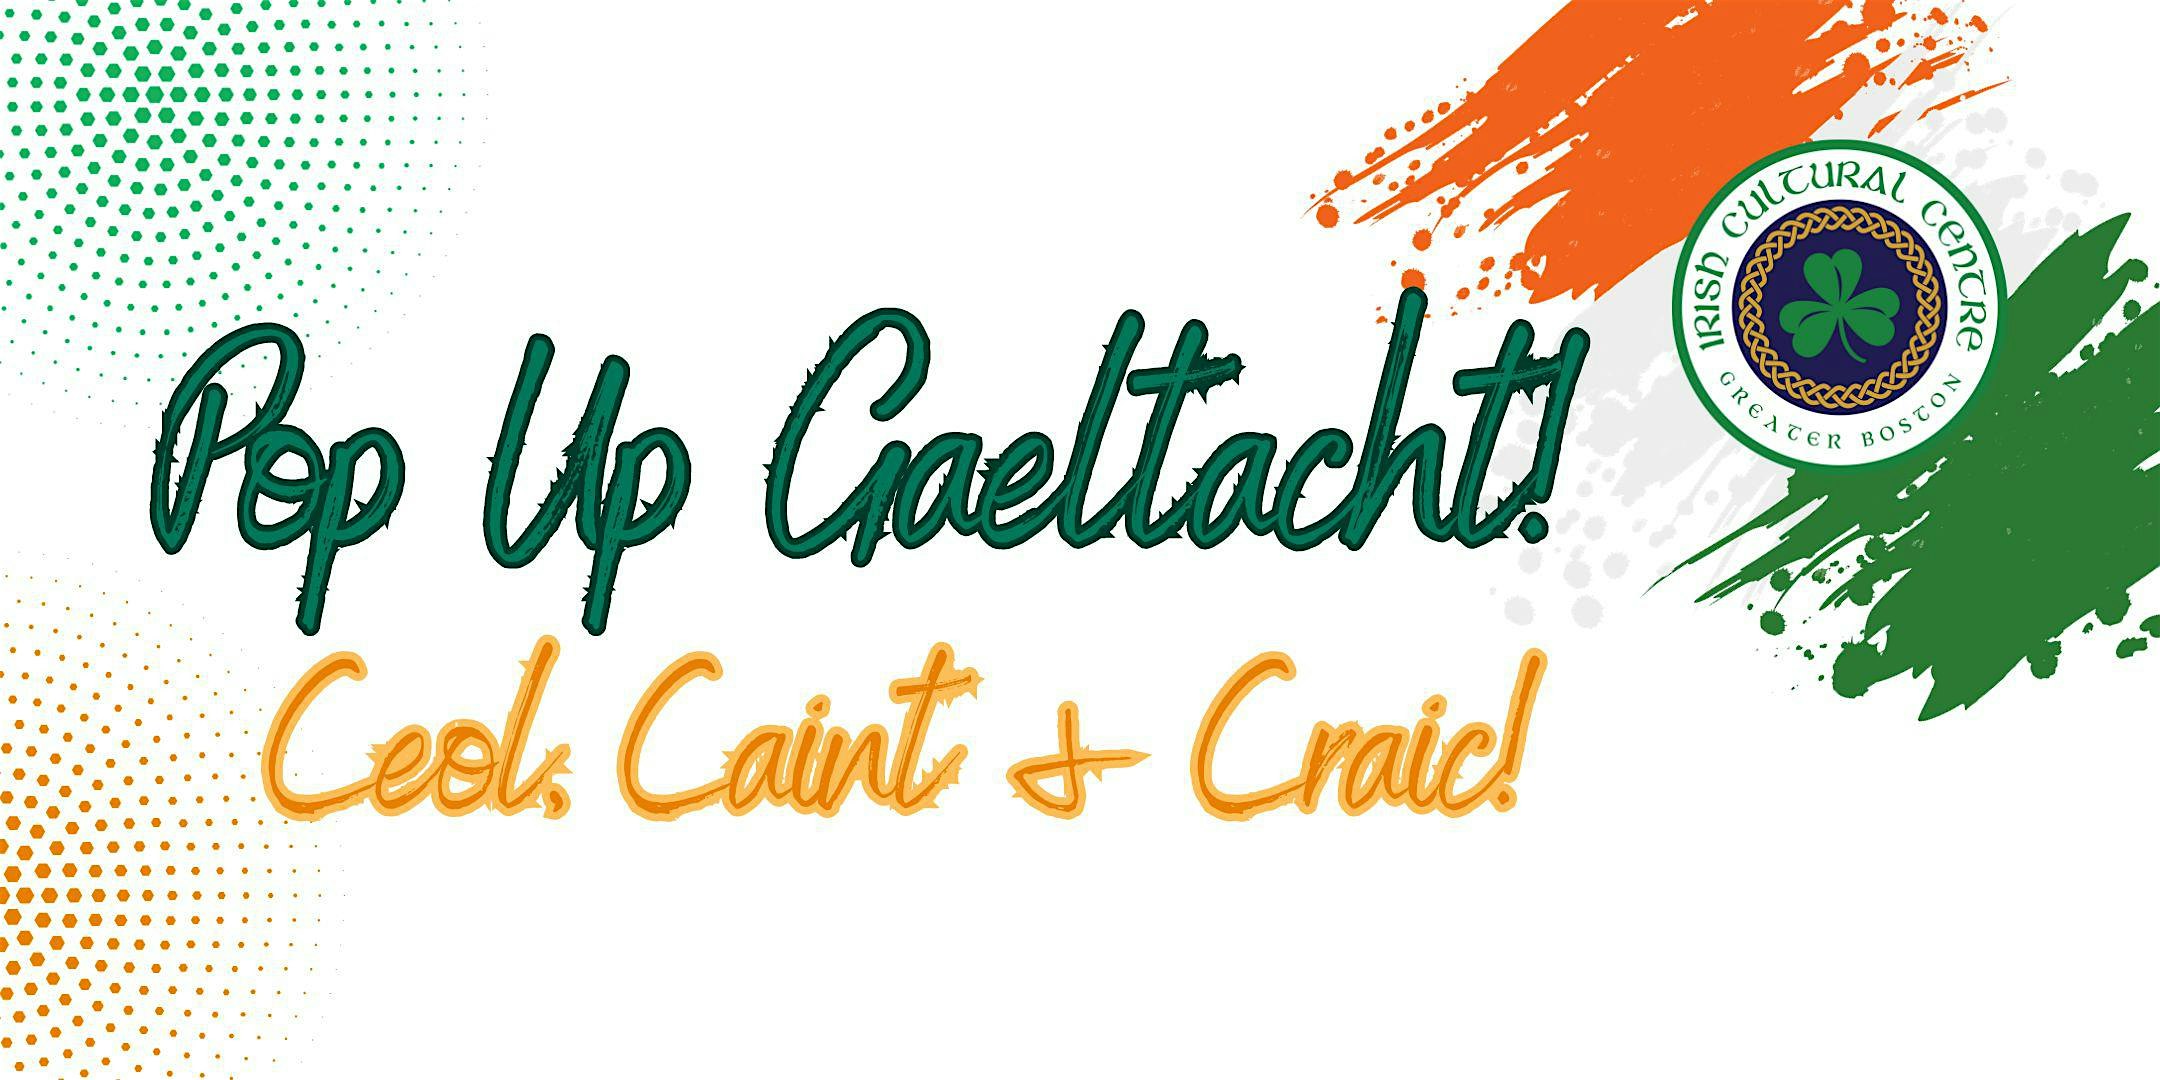 Lá Fhéile Pádraig Pop Up Gaeltacht at the ICC Pub